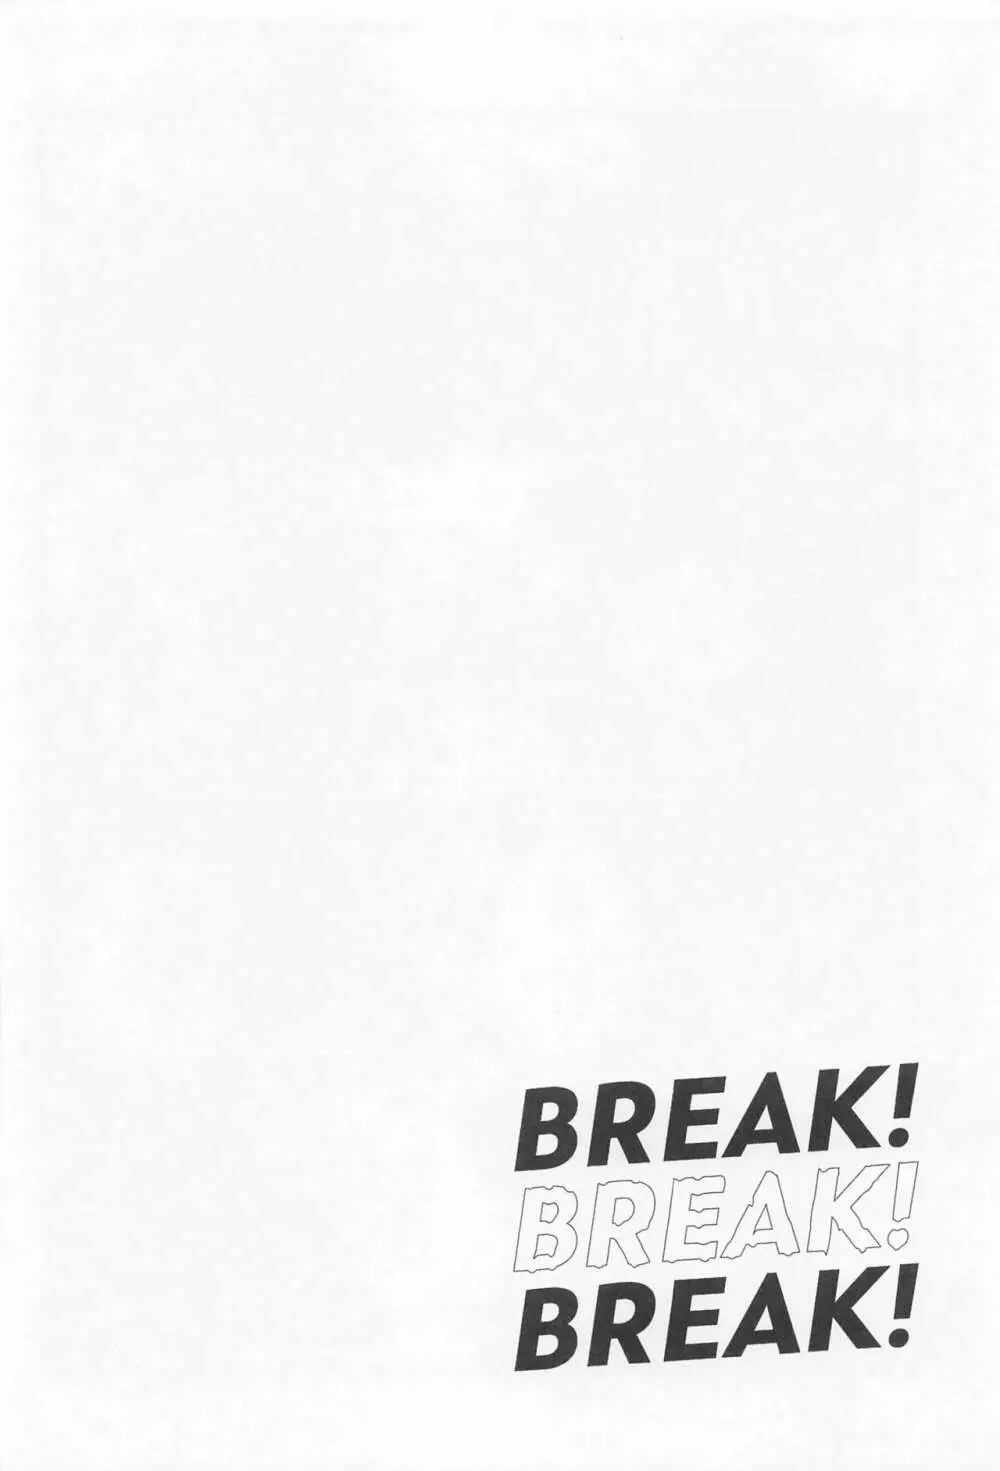 BREAK! BREAK! BREAK! - page17